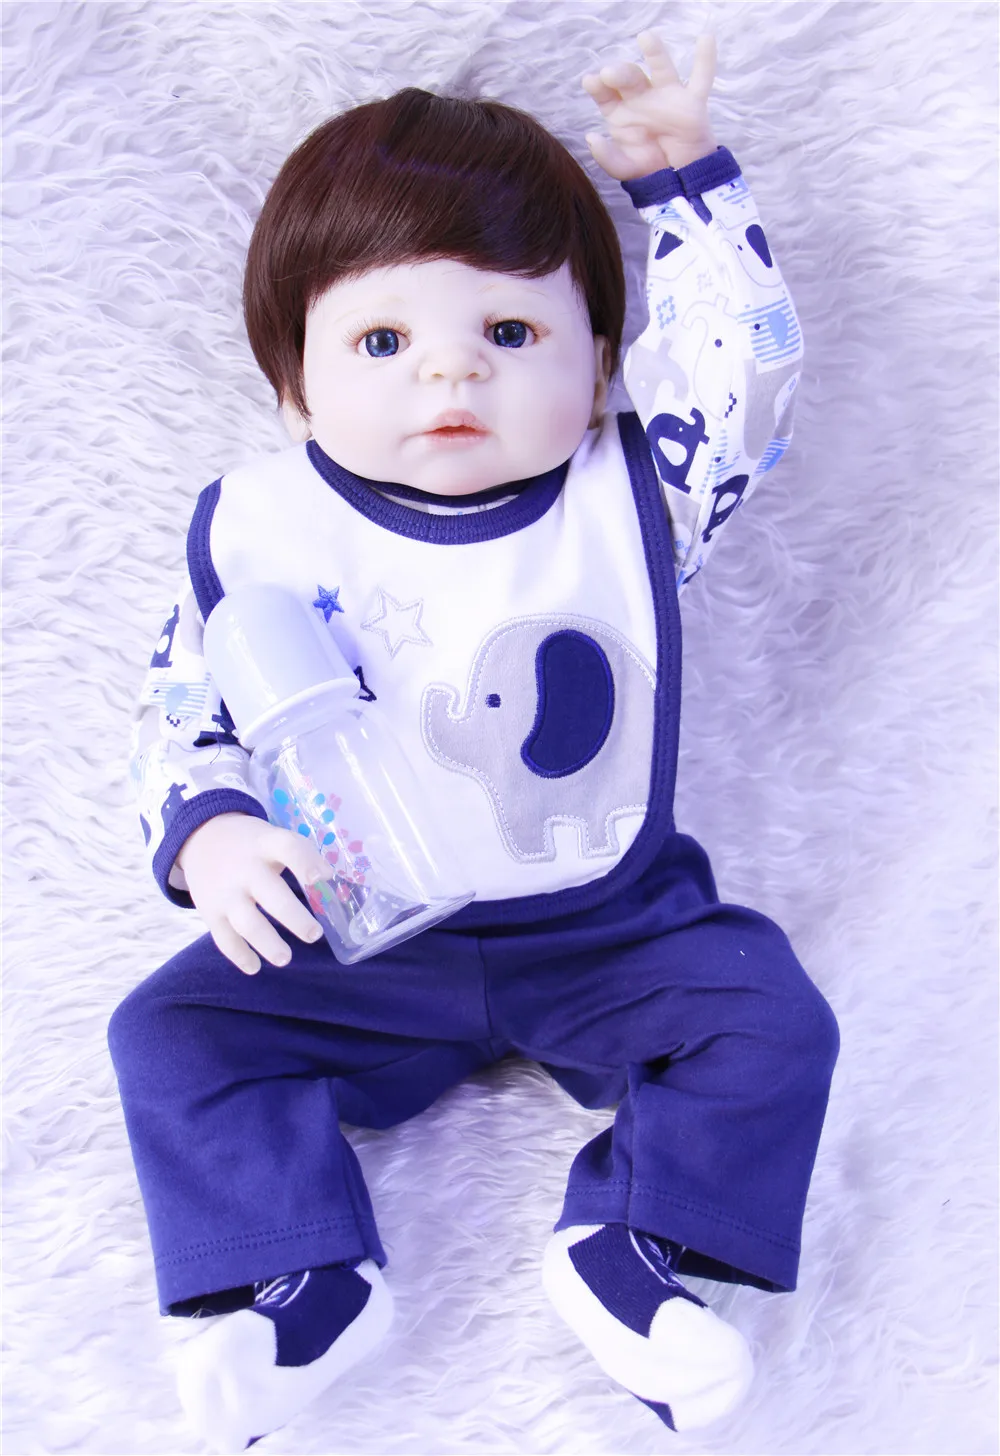 Лучшие игрушки Brinquedos силиконовые Reborn Детские куклы в синей одежде как крутой мальчик как настоящие куклы Reborn для девочек Baby alive